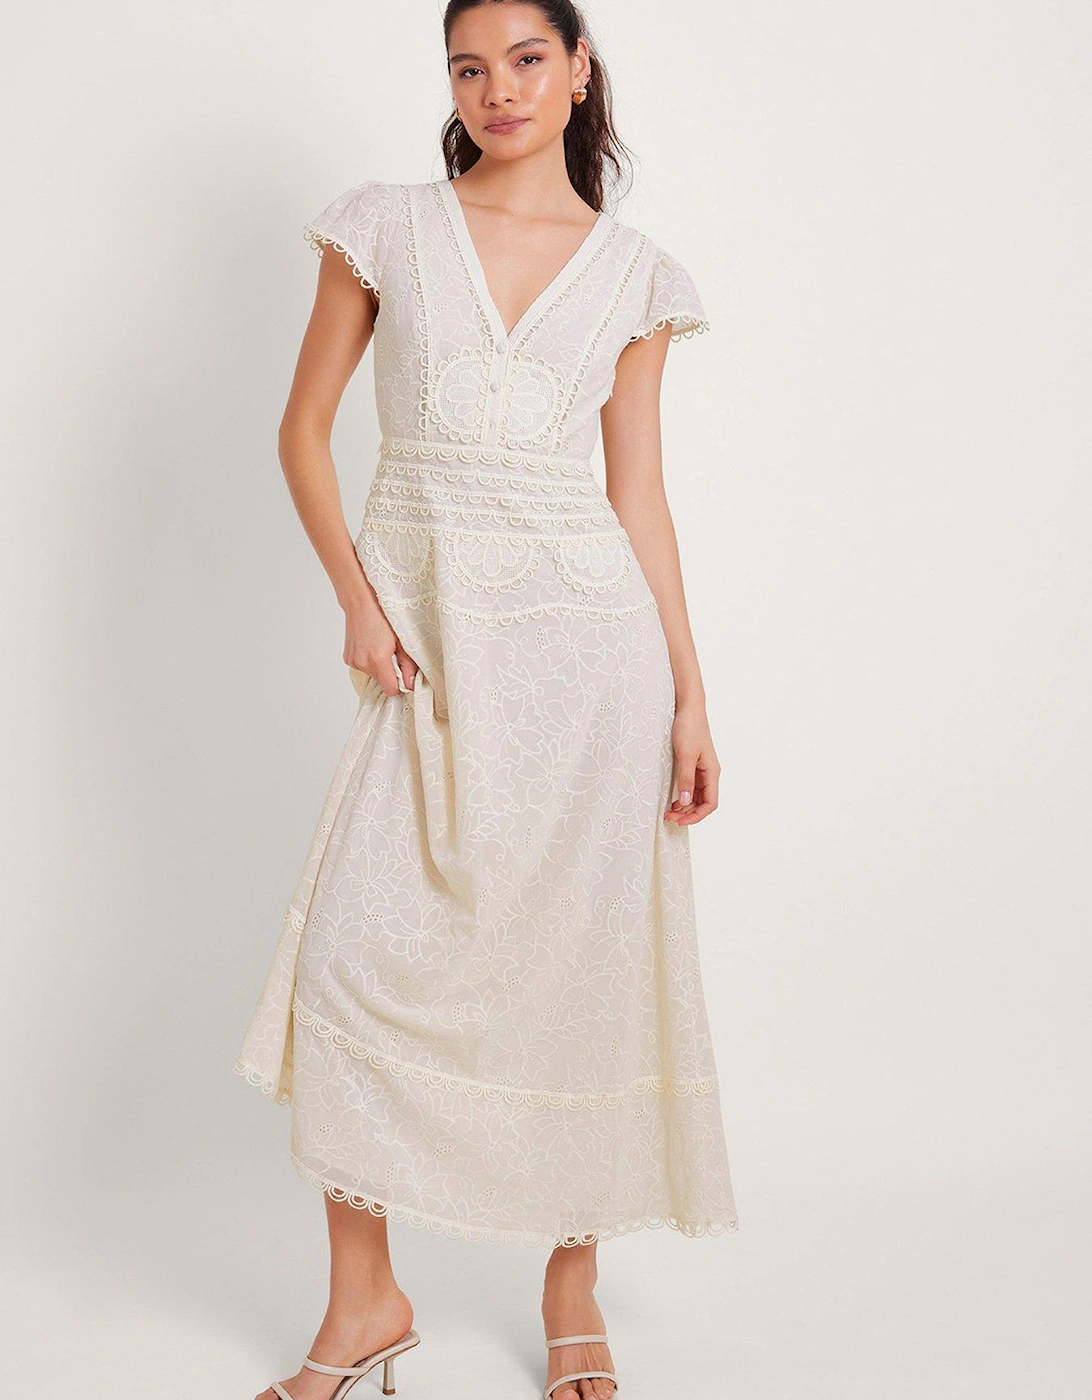 Irene Broderie Dress - White, 2 of 1